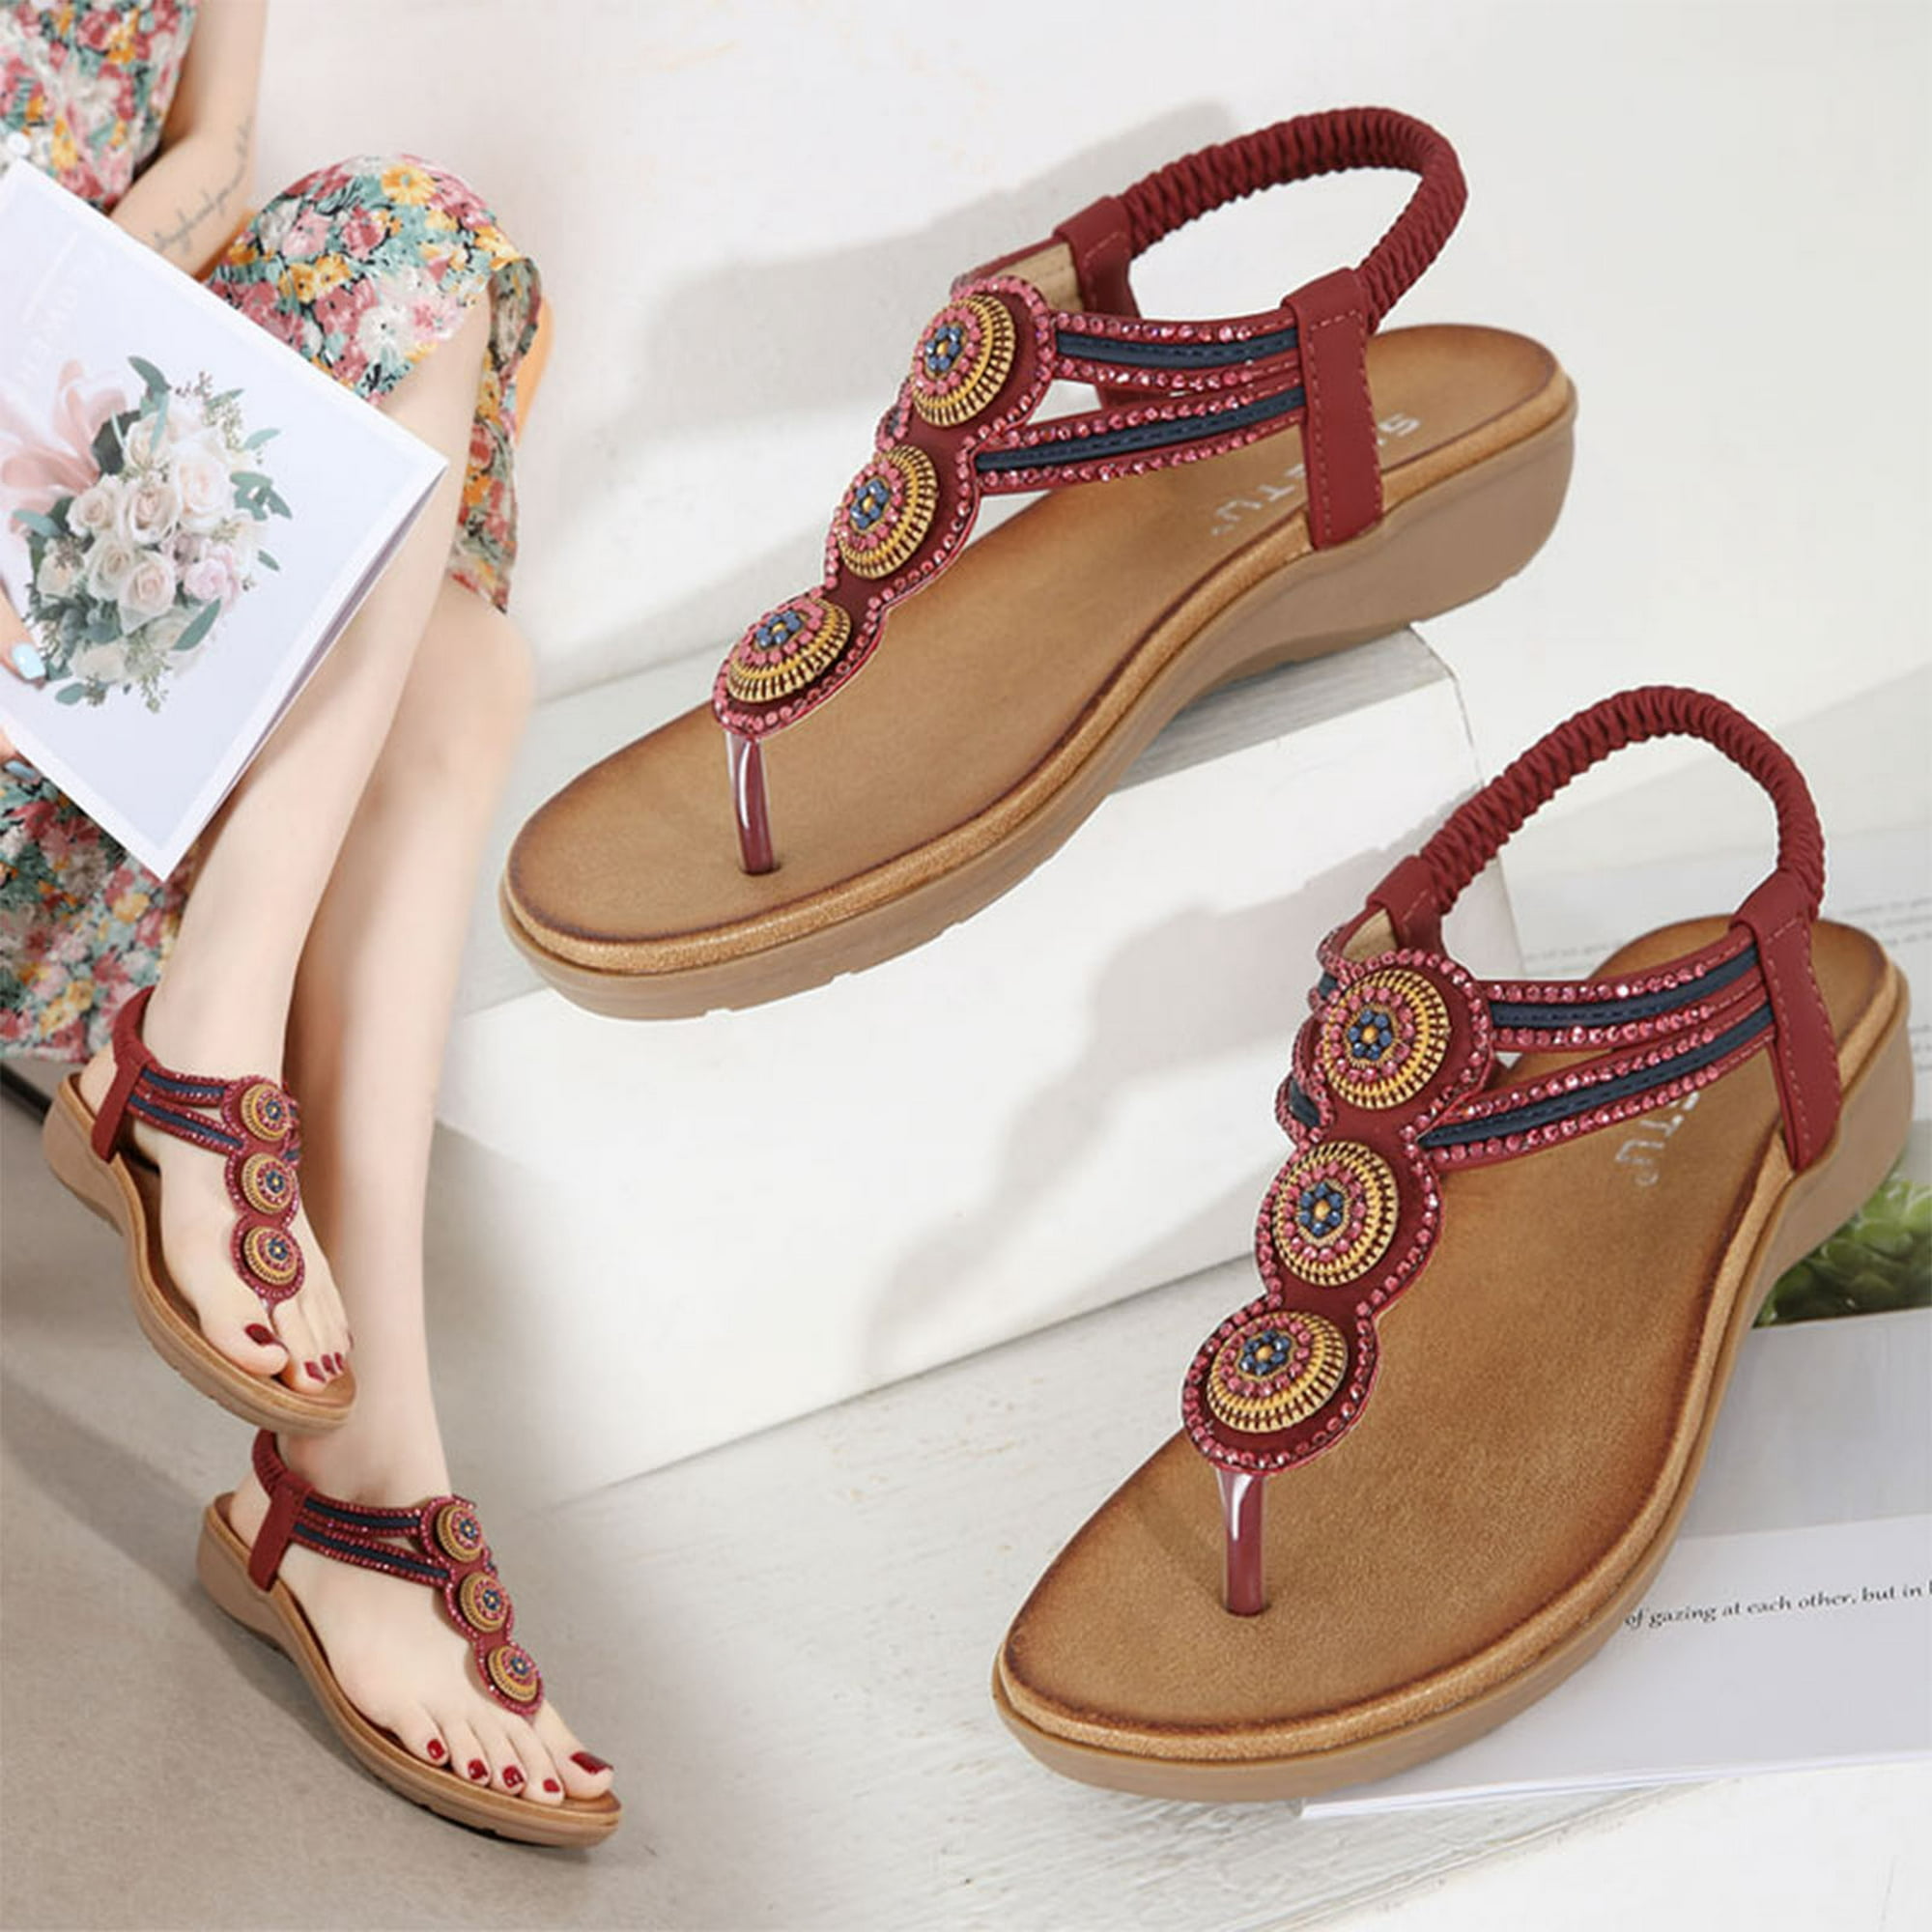 Sandalias de verano para mujer Sandalias planas sin cordones Zapatos  romanos Sandalias informales co Wmkox8yii nm8127